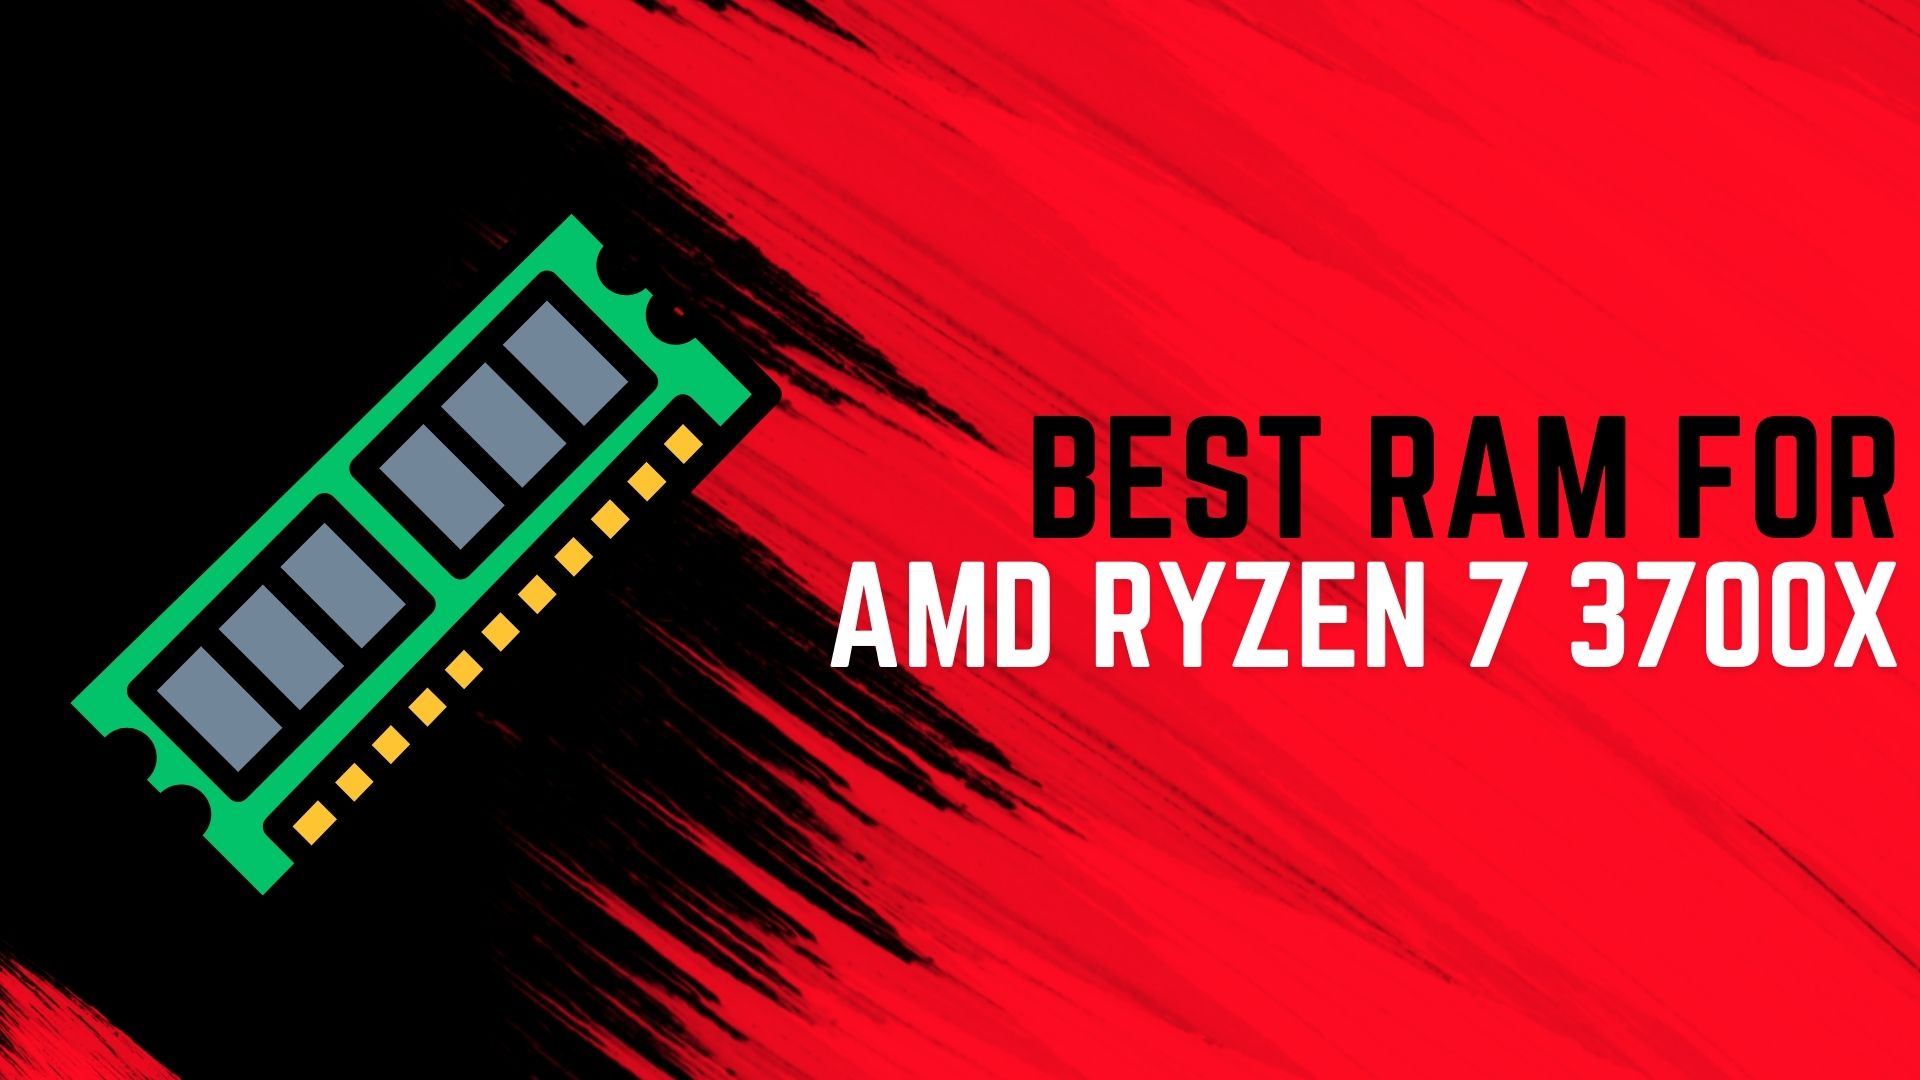 RAM for AMD Ryzen 7 3700X